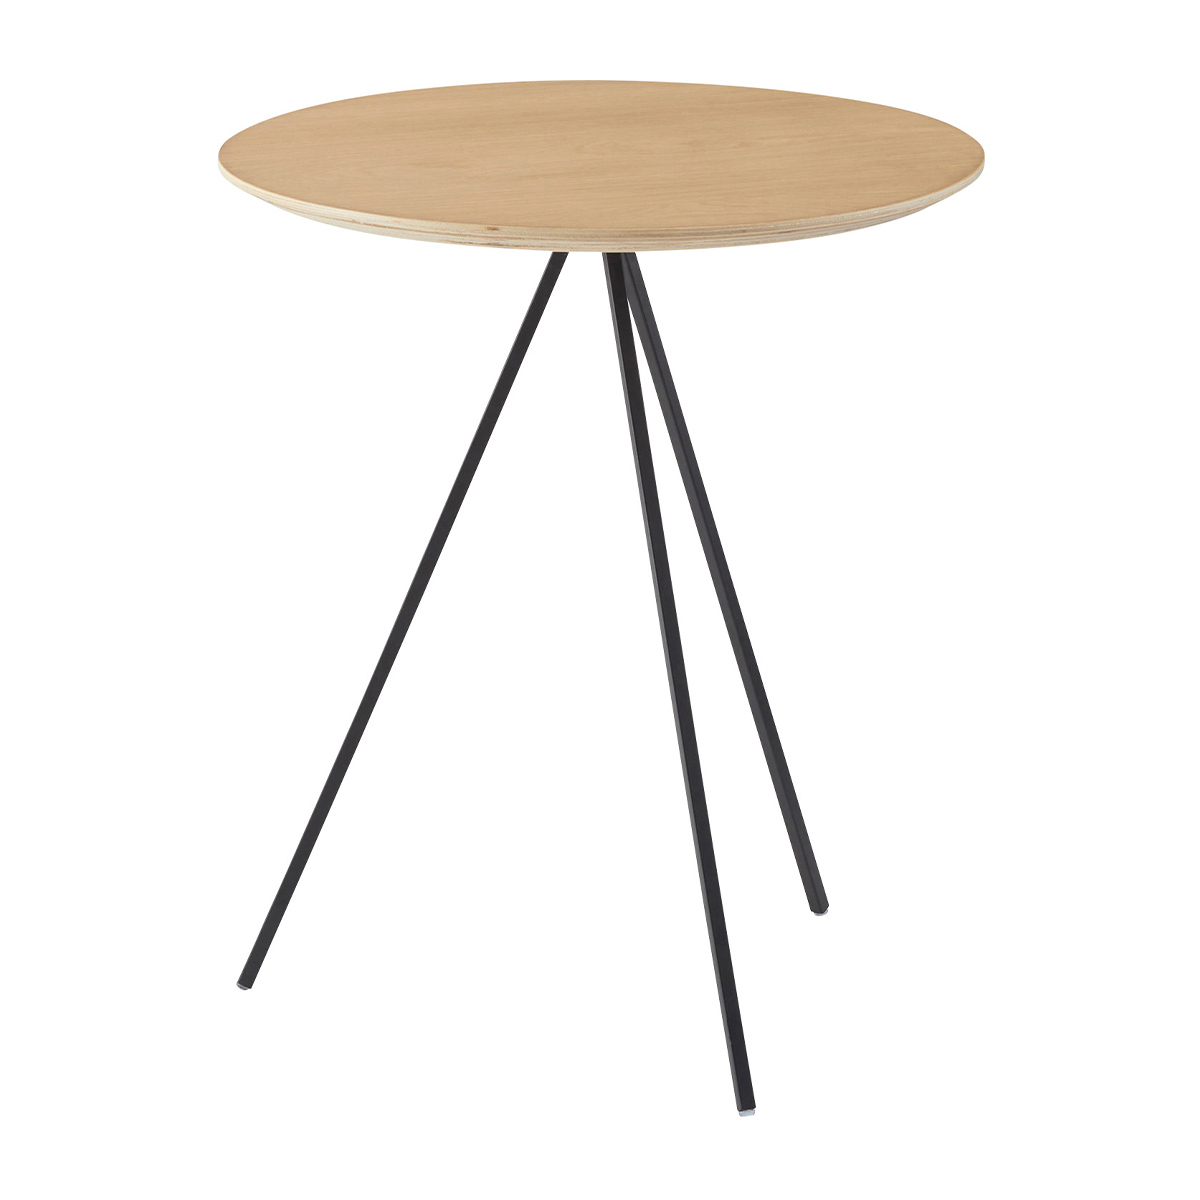 サイドテーブル テーブル ナイトテーブル アイアン 木製 天然木 オーク 